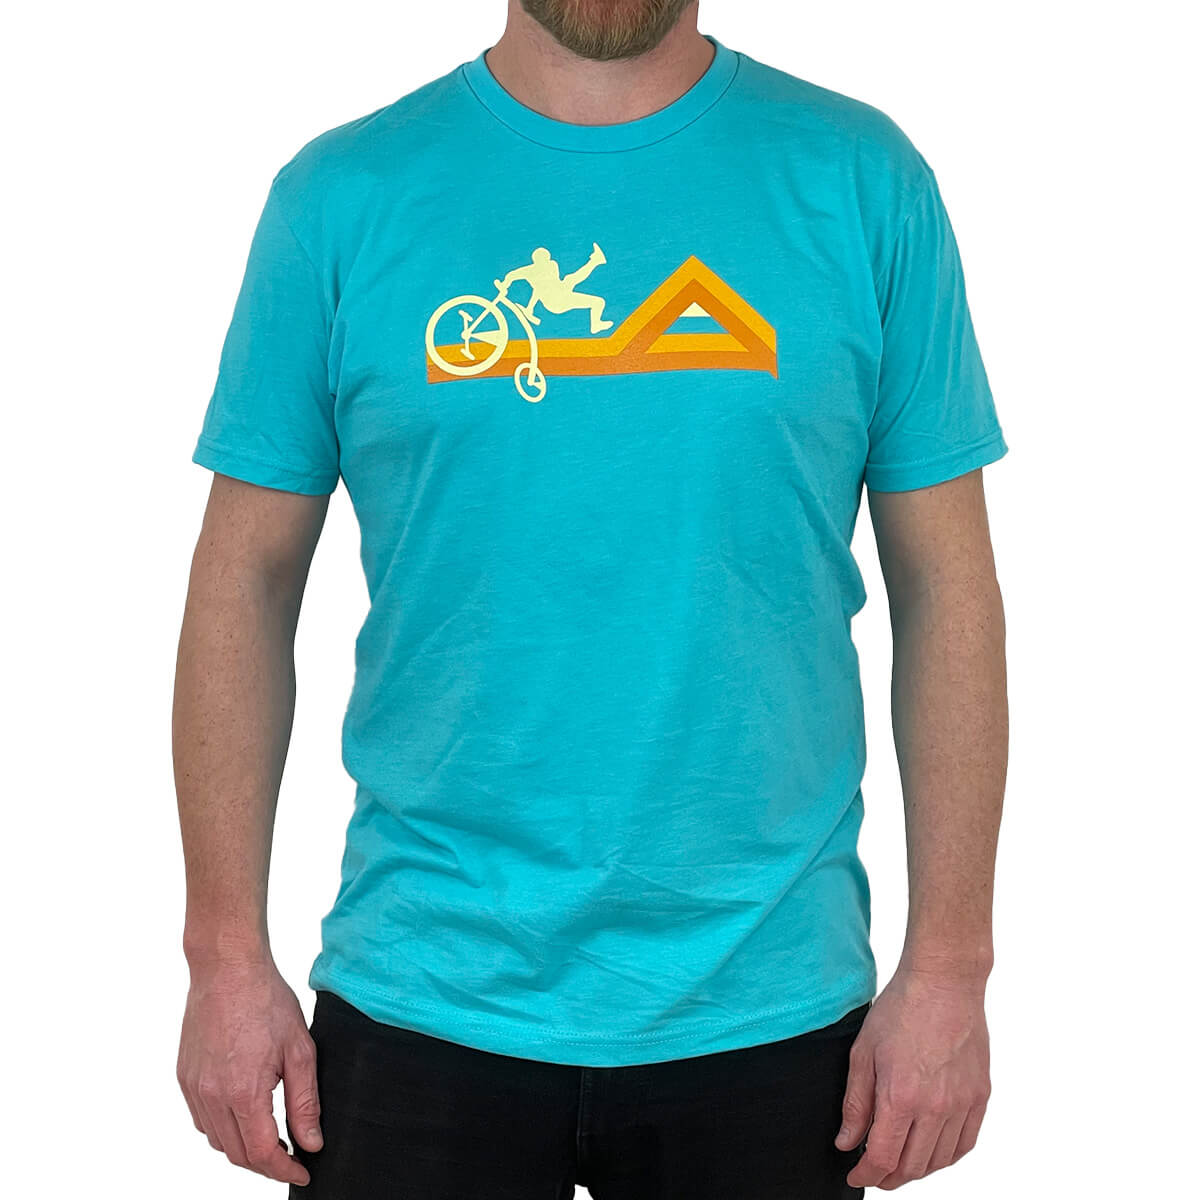 Mountain coast biking t shirt. 